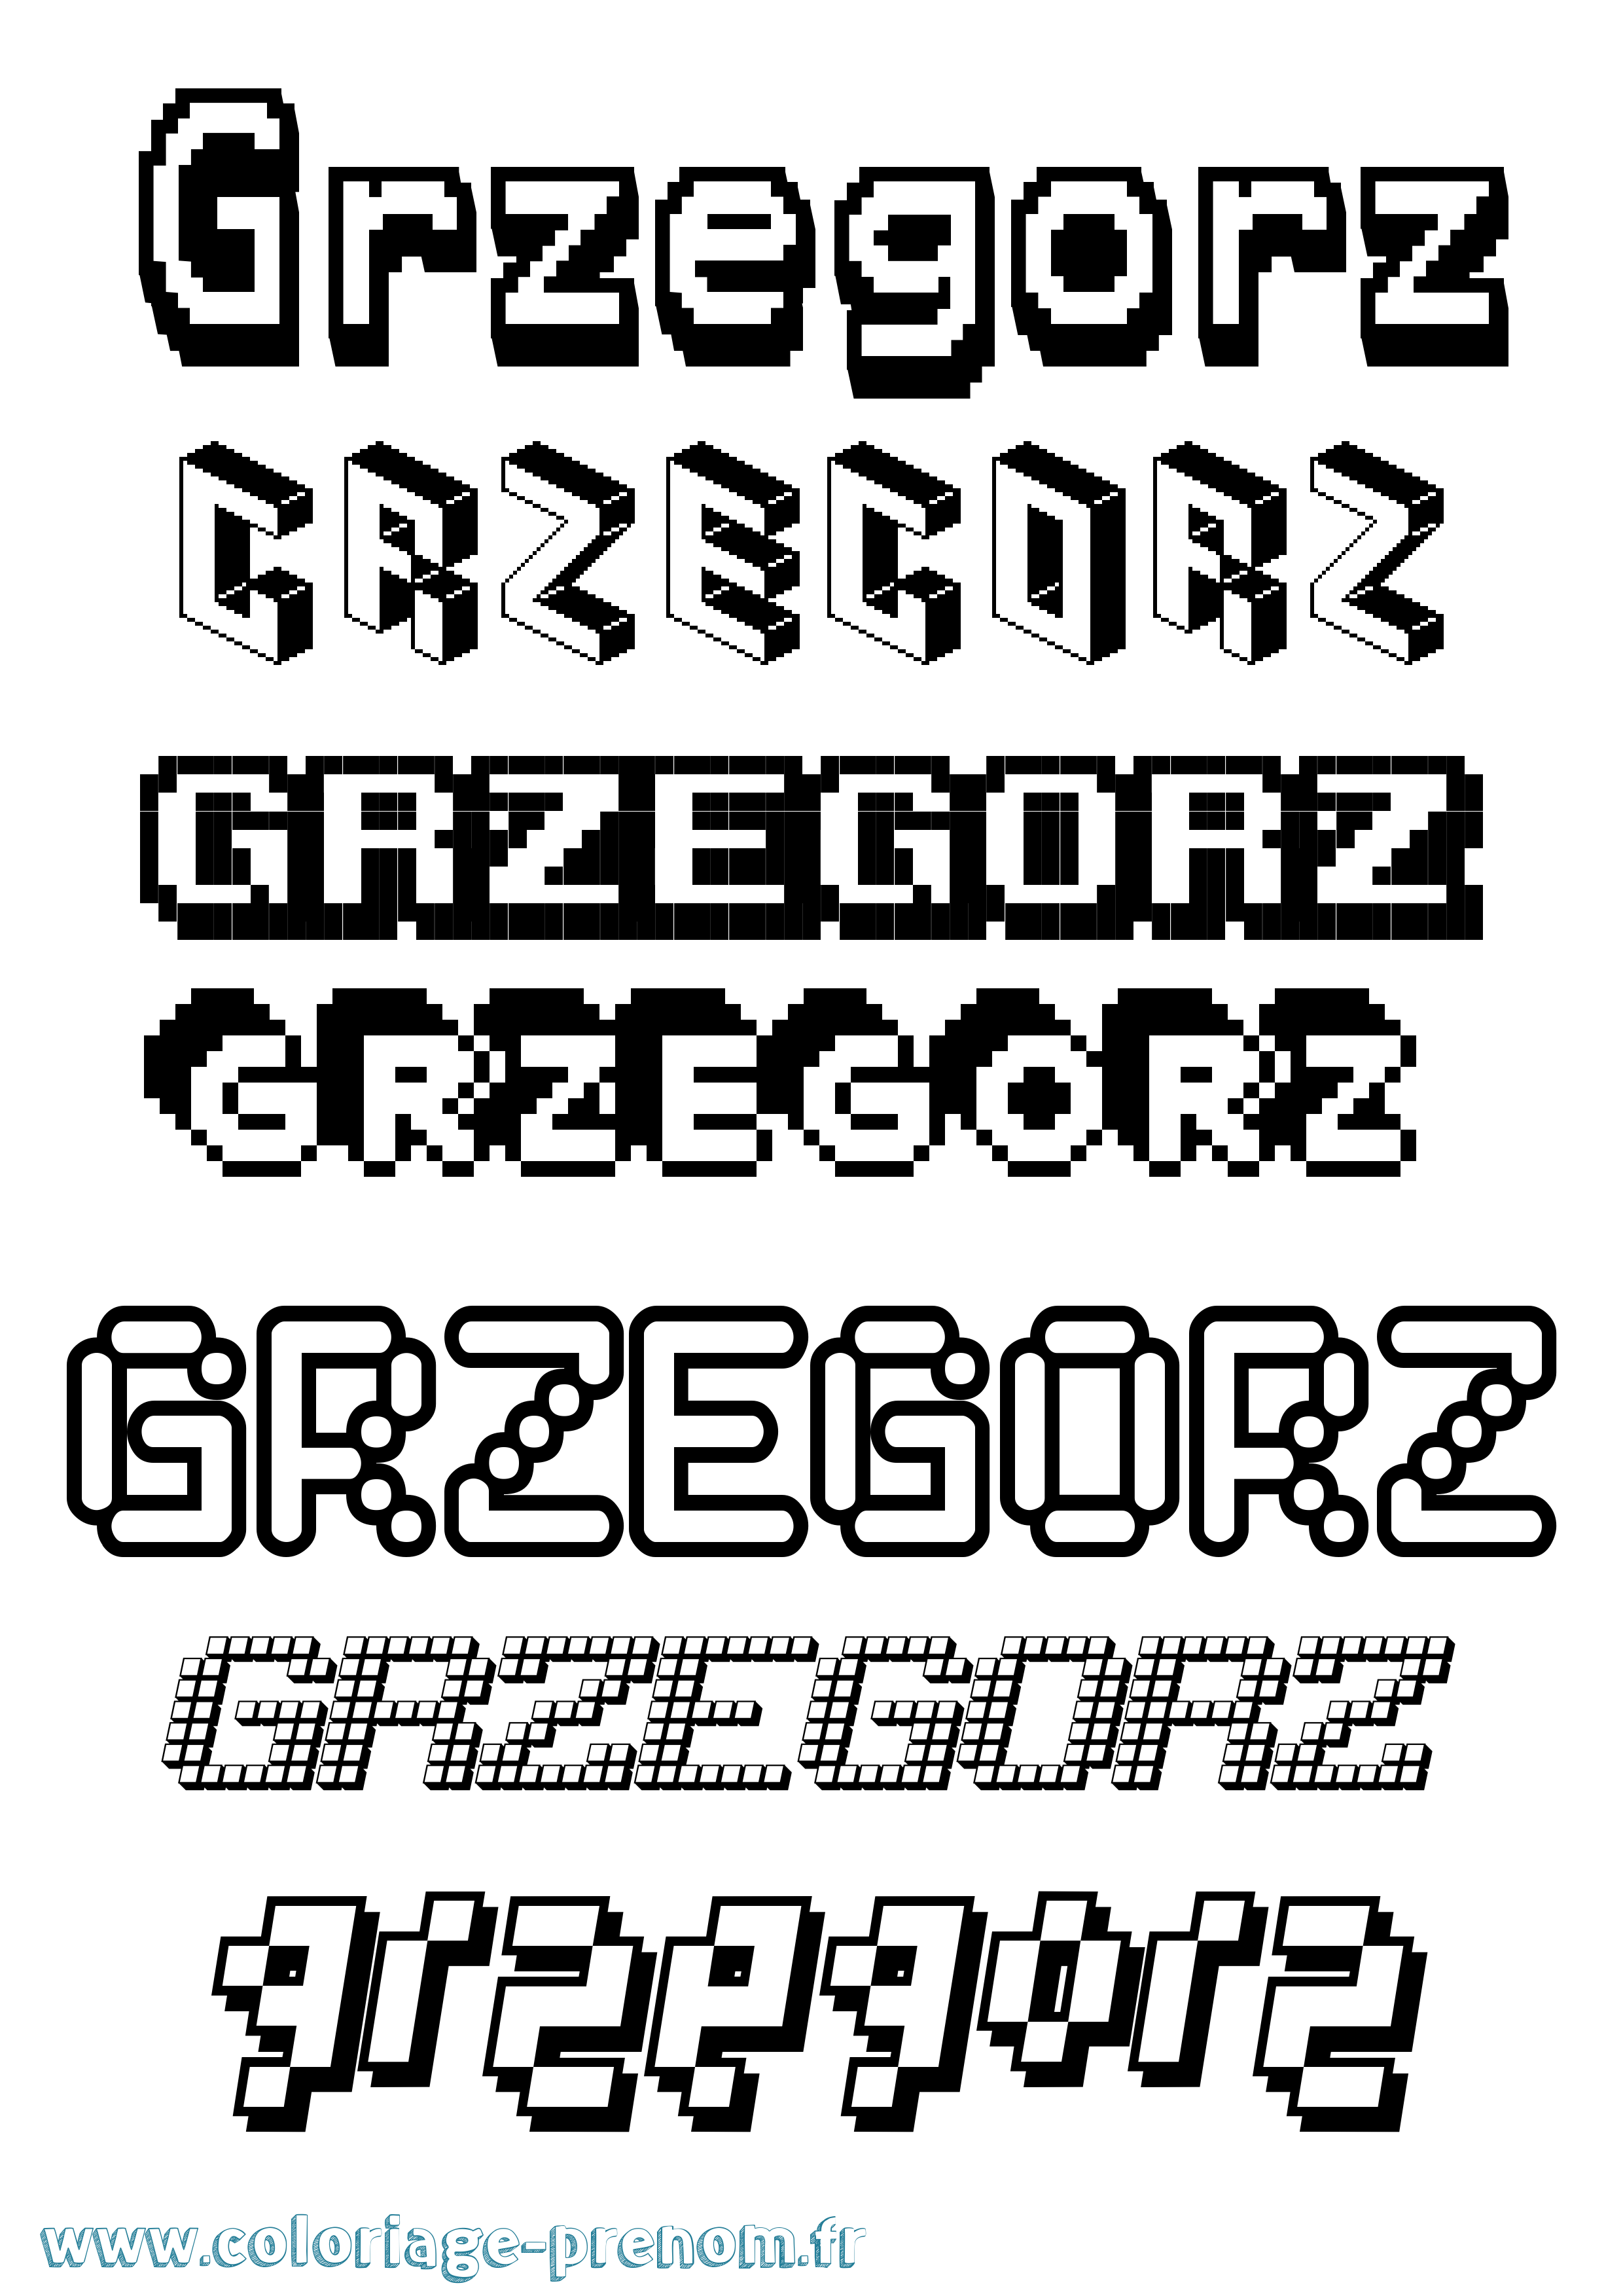 Coloriage prénom Grzegorz Pixel